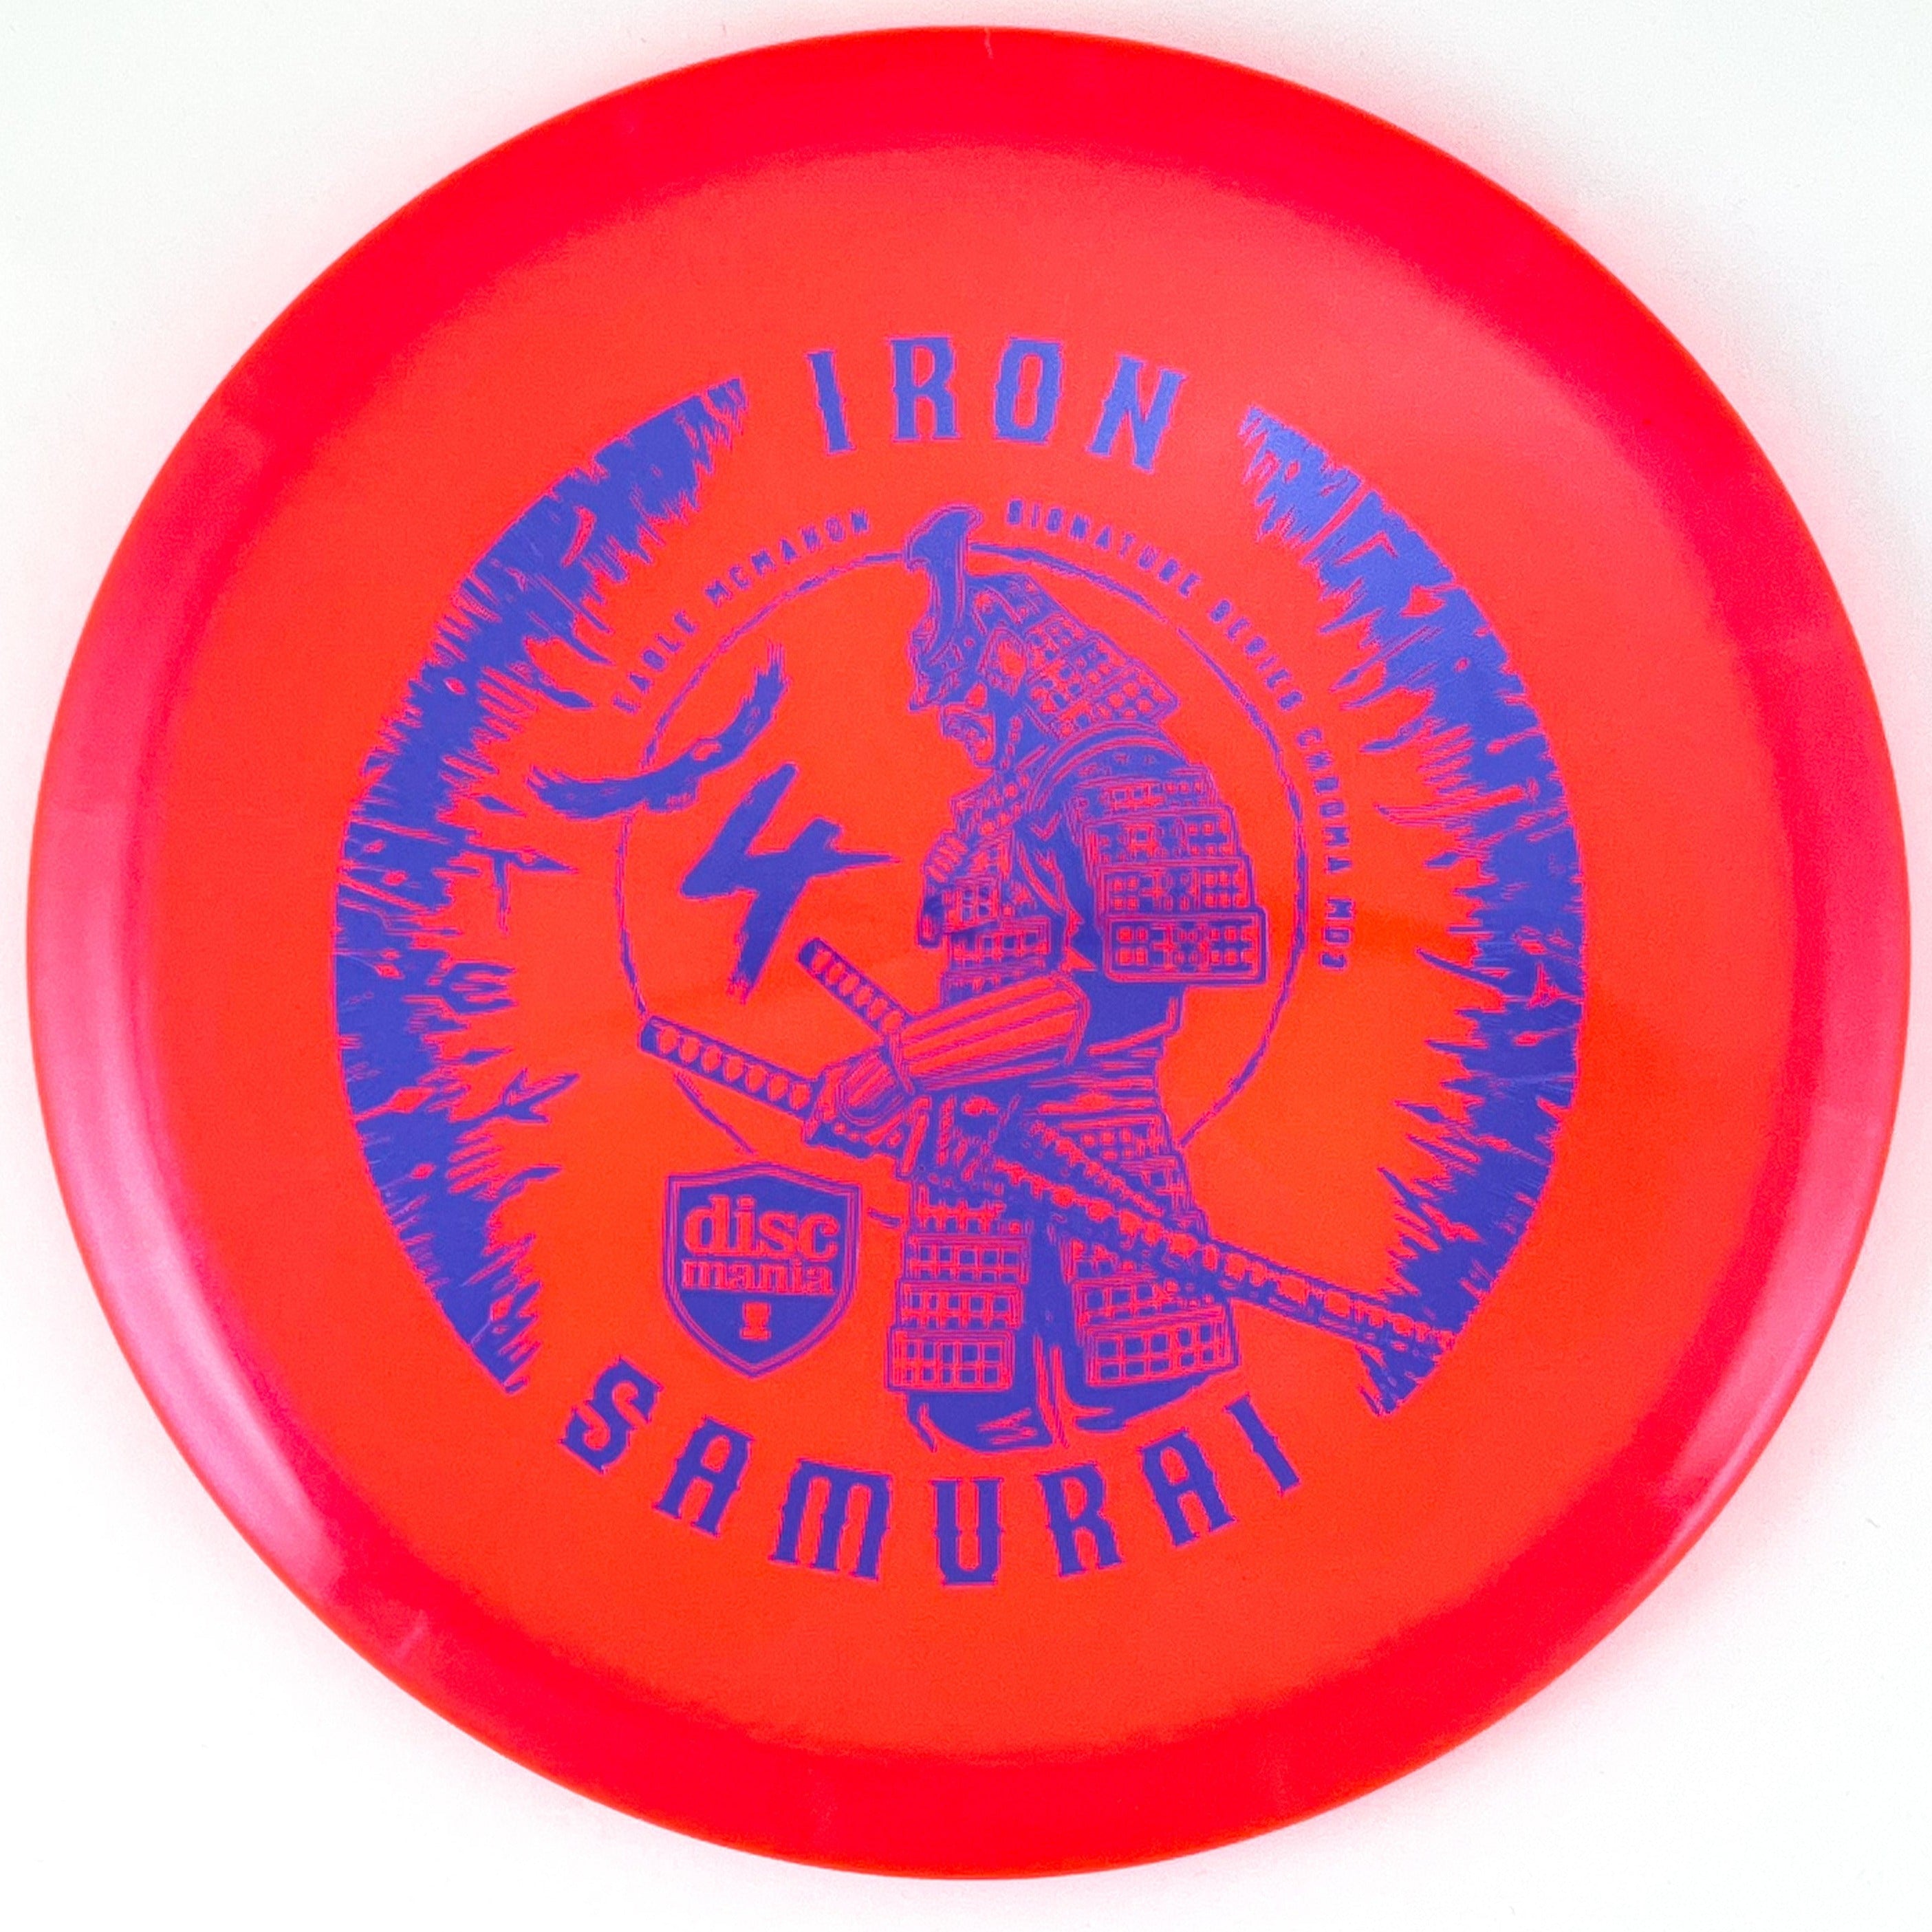 Orange Eagle McMahon Signiture Series Iron Samurai 4 Chroma MD3 disc golf midrange disc by Discmania Golf Discs.